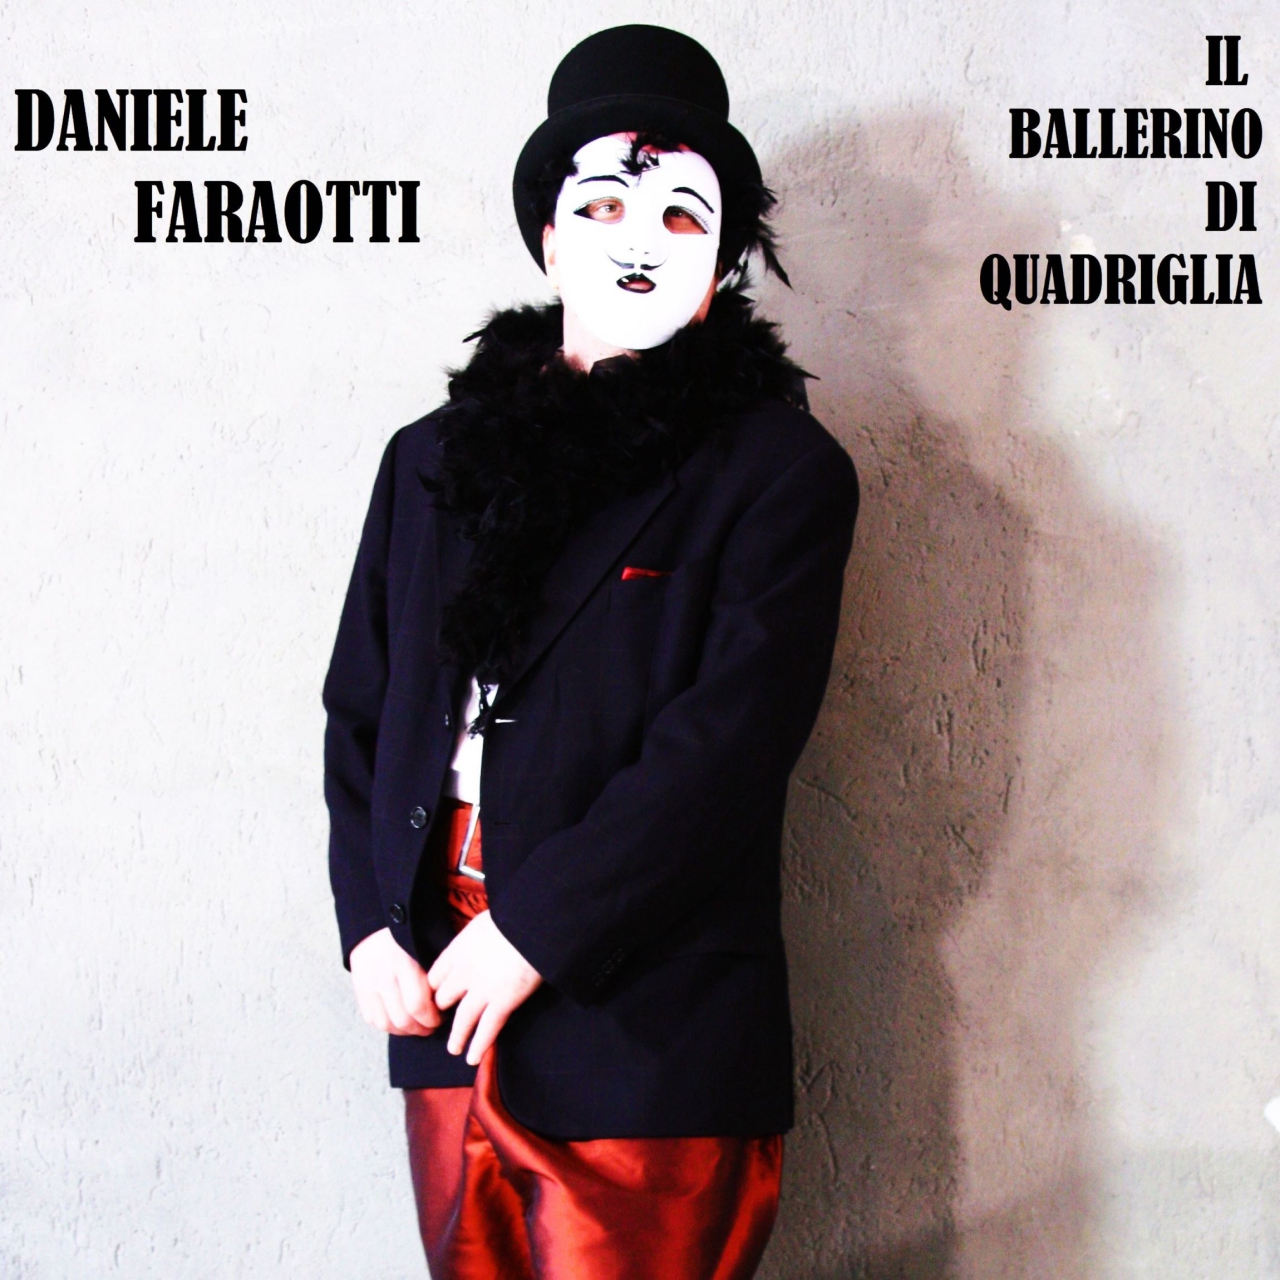 Daniele Faraotti - “Il ballerino di quadriglia”